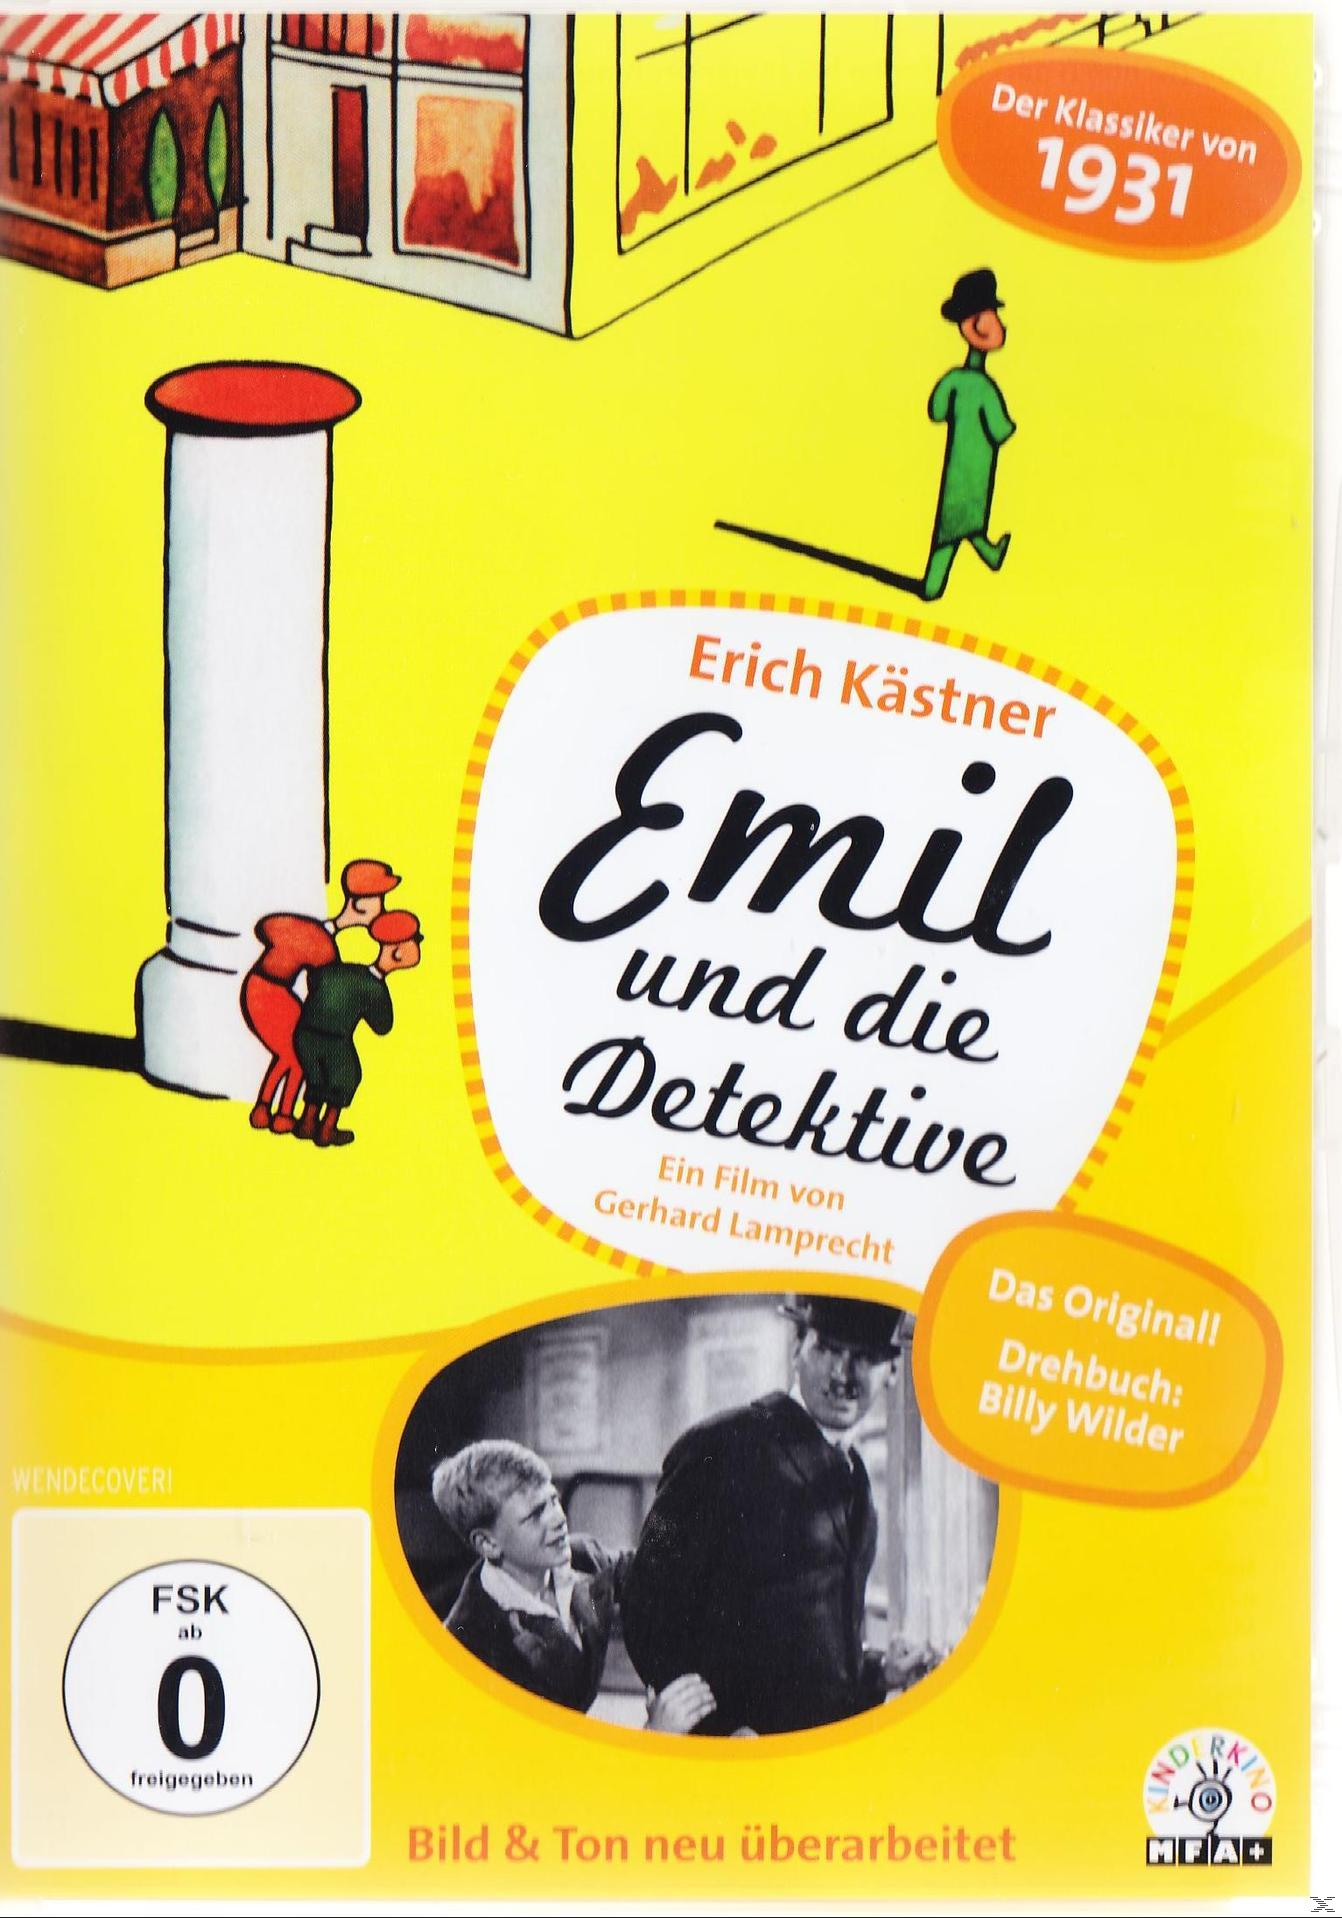 Detektive DVD und die Emil